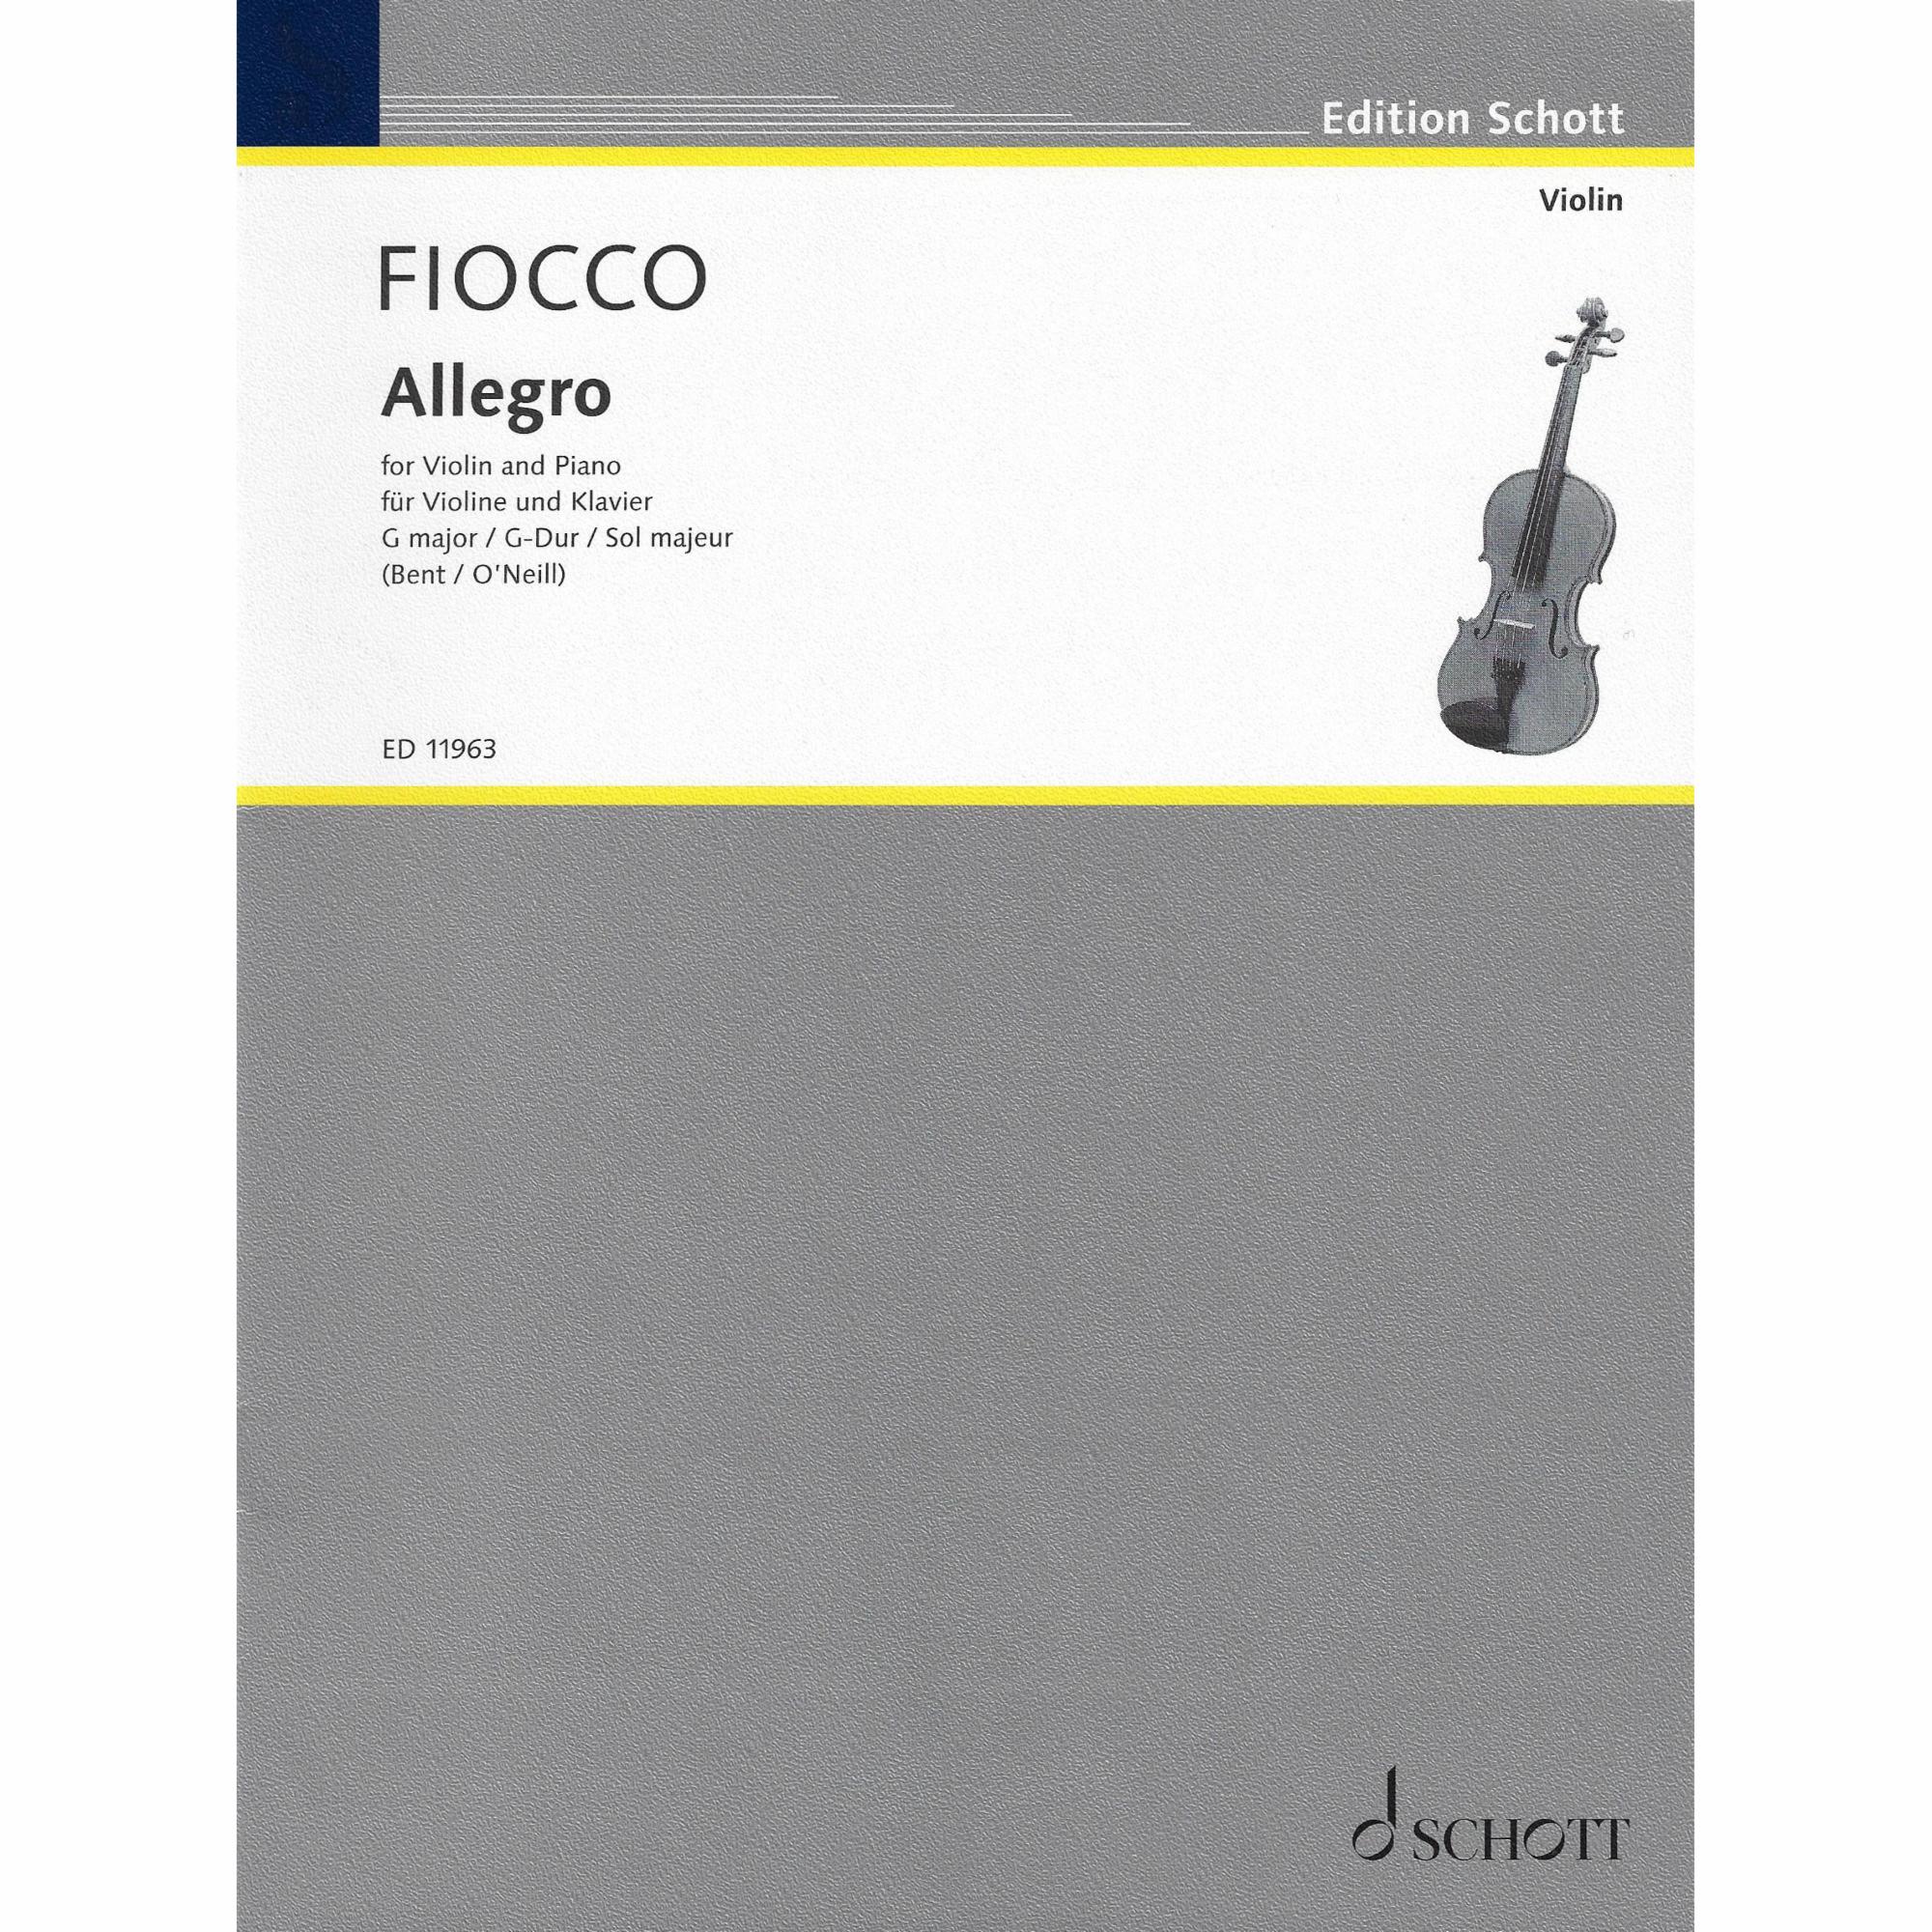 Fiocco -- Allegro in G Major for Violin and Piano